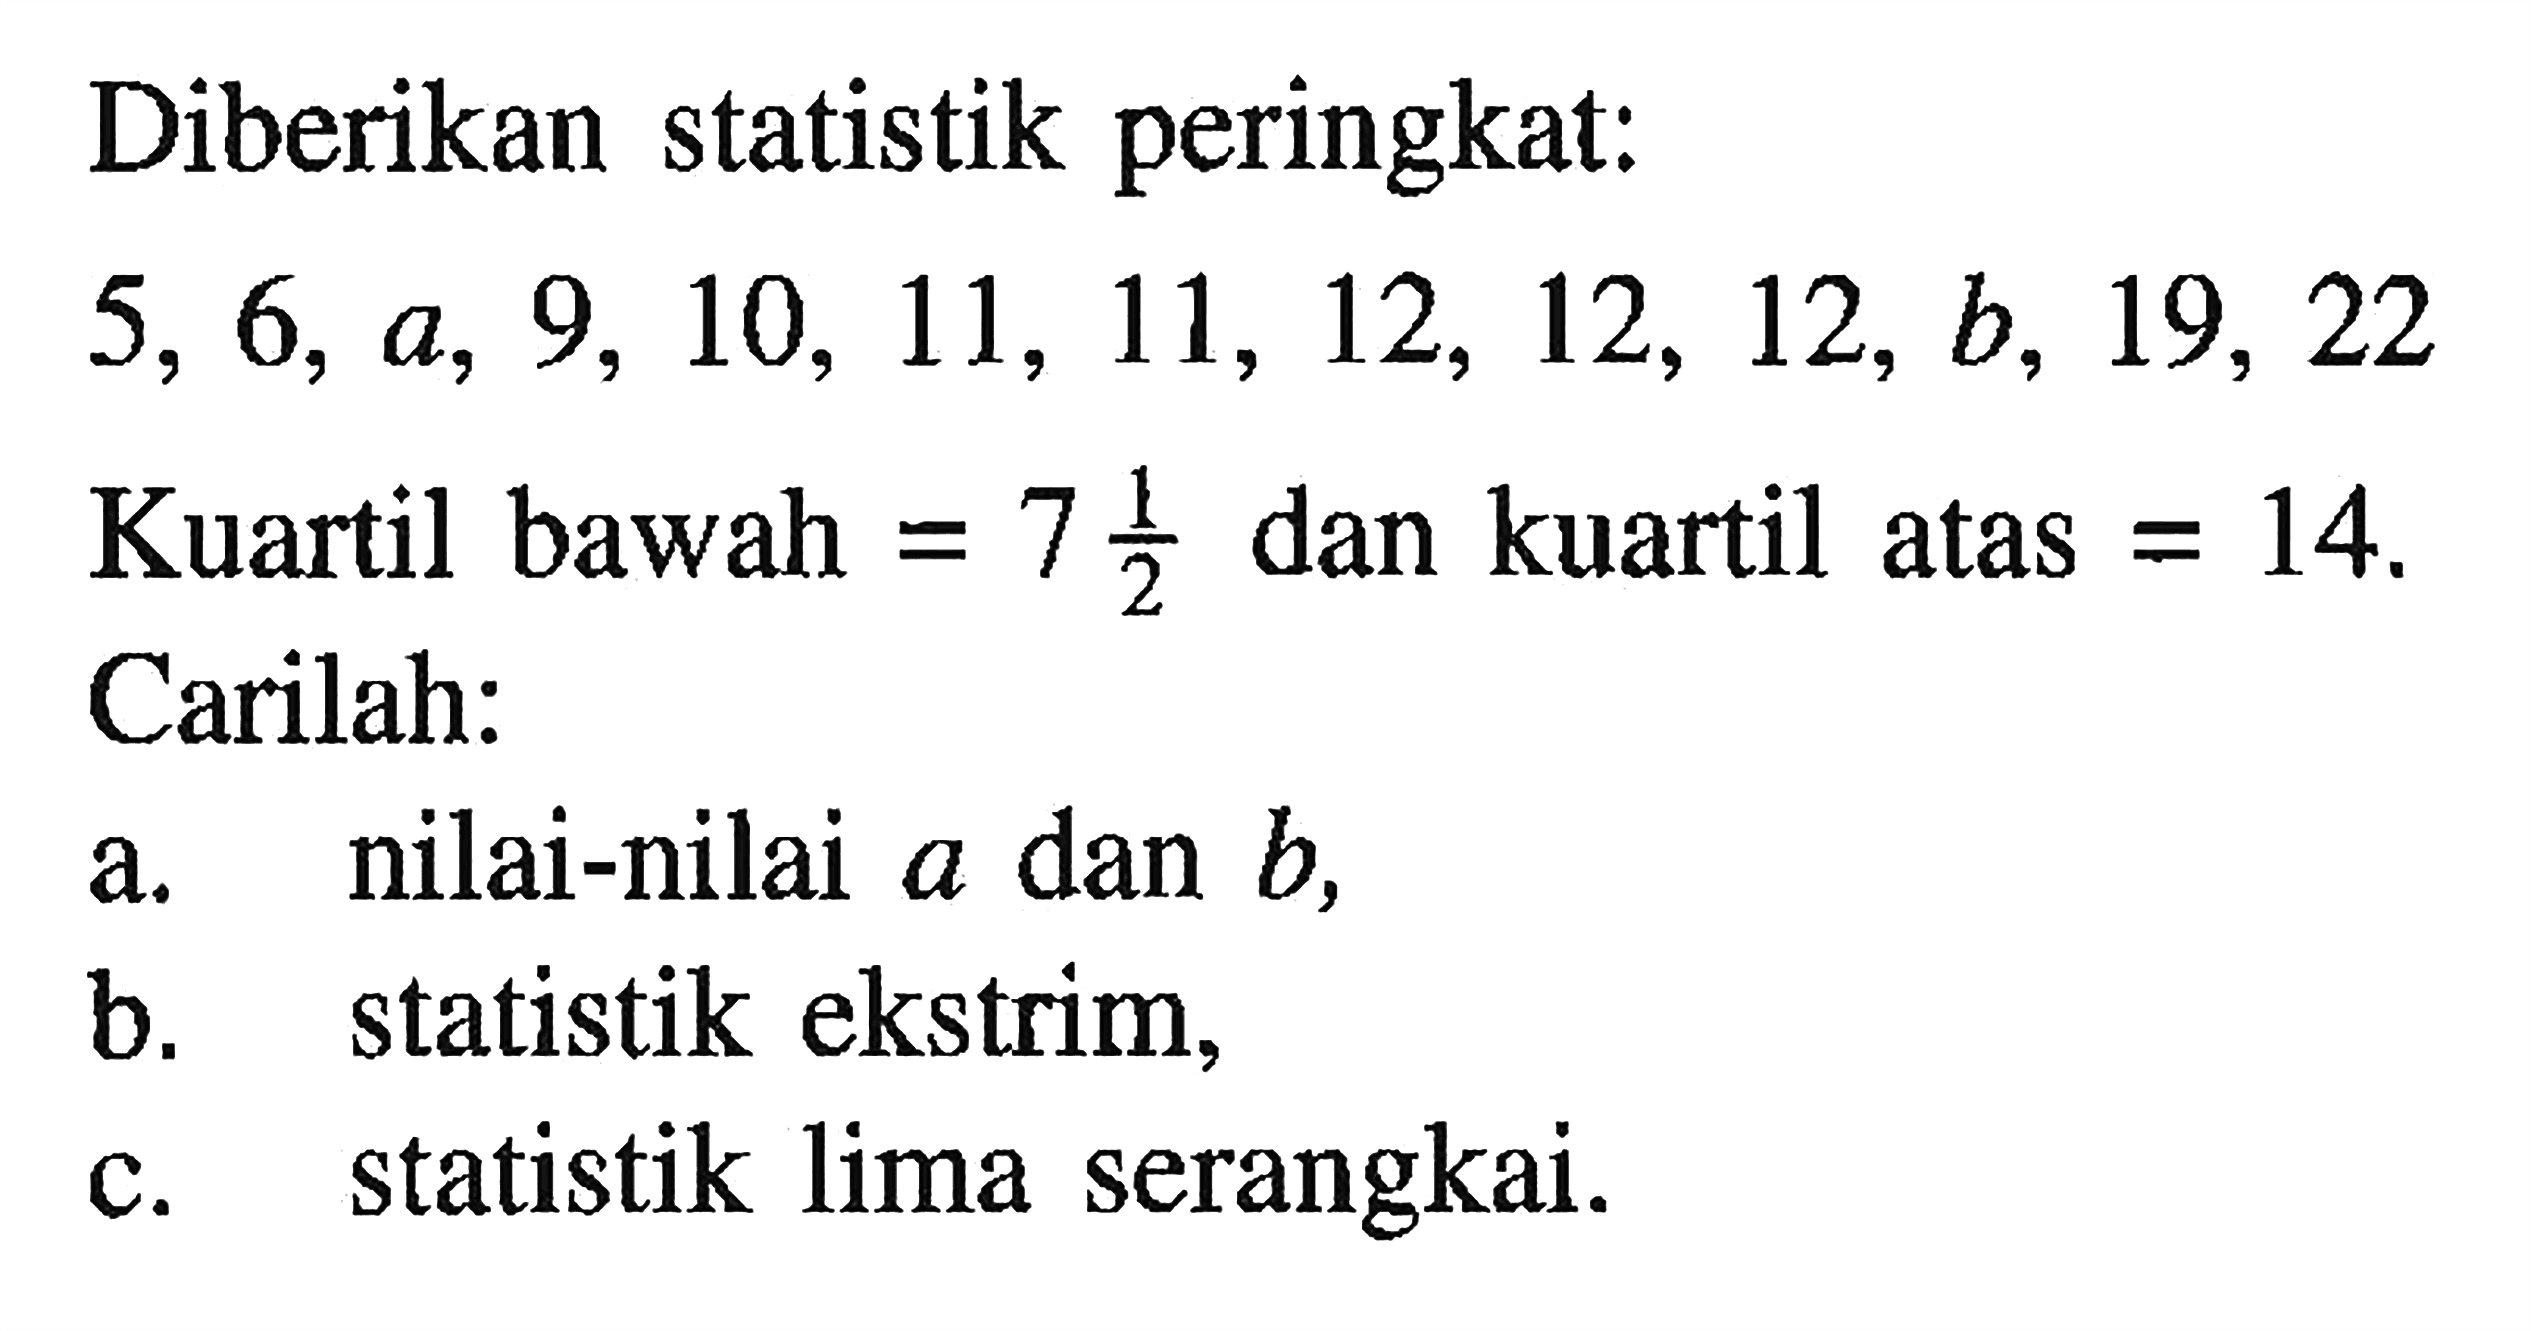 Diberikan statistik peringkat: 5, 6, a, 9, 10, 11, 11, 12, 12, 12, b, 19, 22 Kuartil bawah = 7 1/2 dan kuartil atas = 14 Carilah: a. nilai-nilai a dan b, b. statistik ekstrim c. statistik lima serangkai.